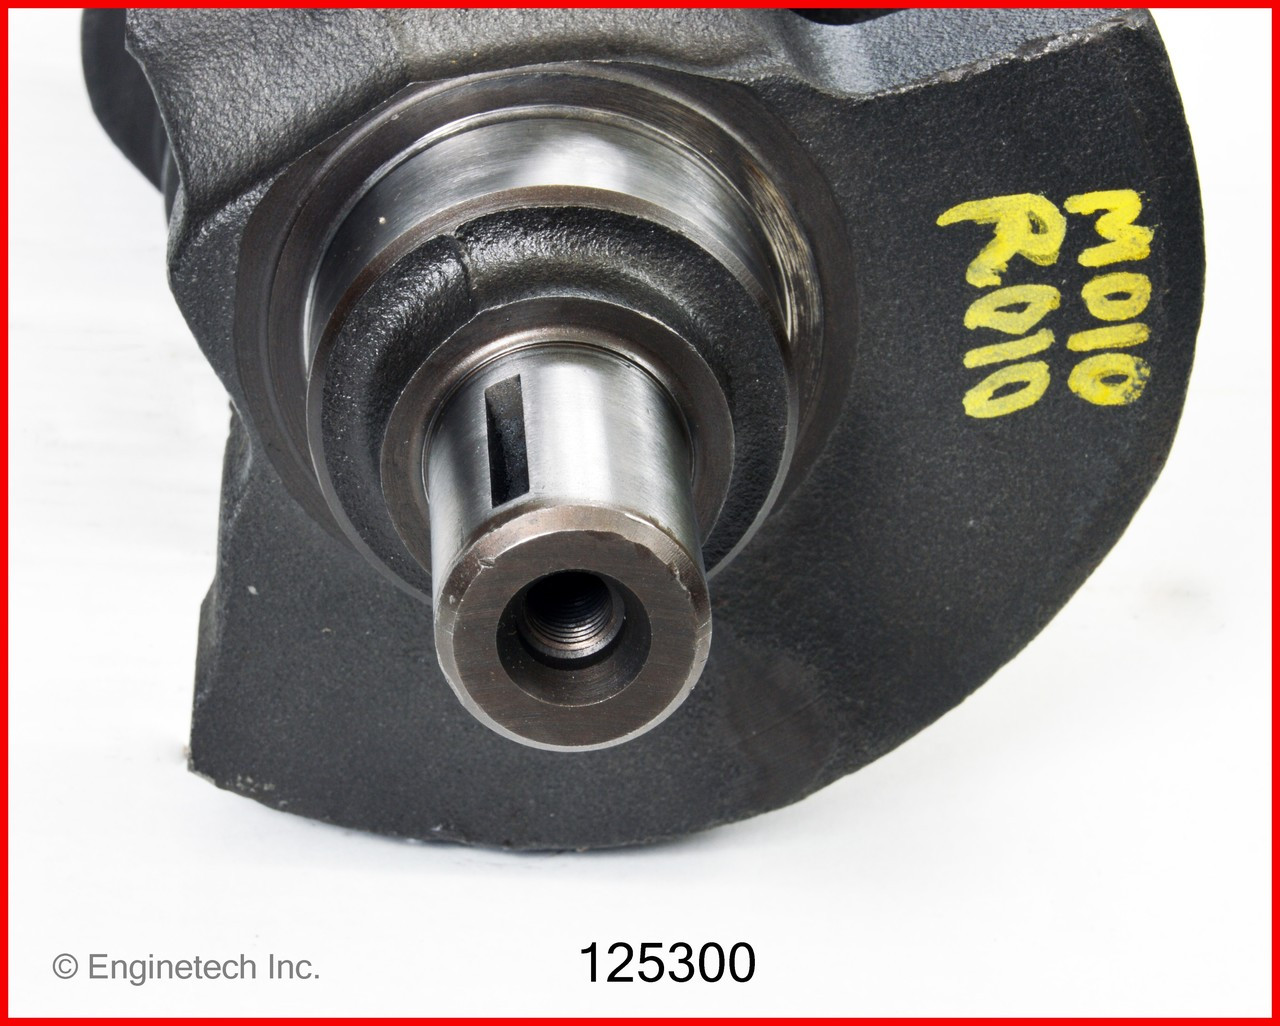 Crankshaft Kit - 1991 GMC C1500 4.3L (125300.K154)